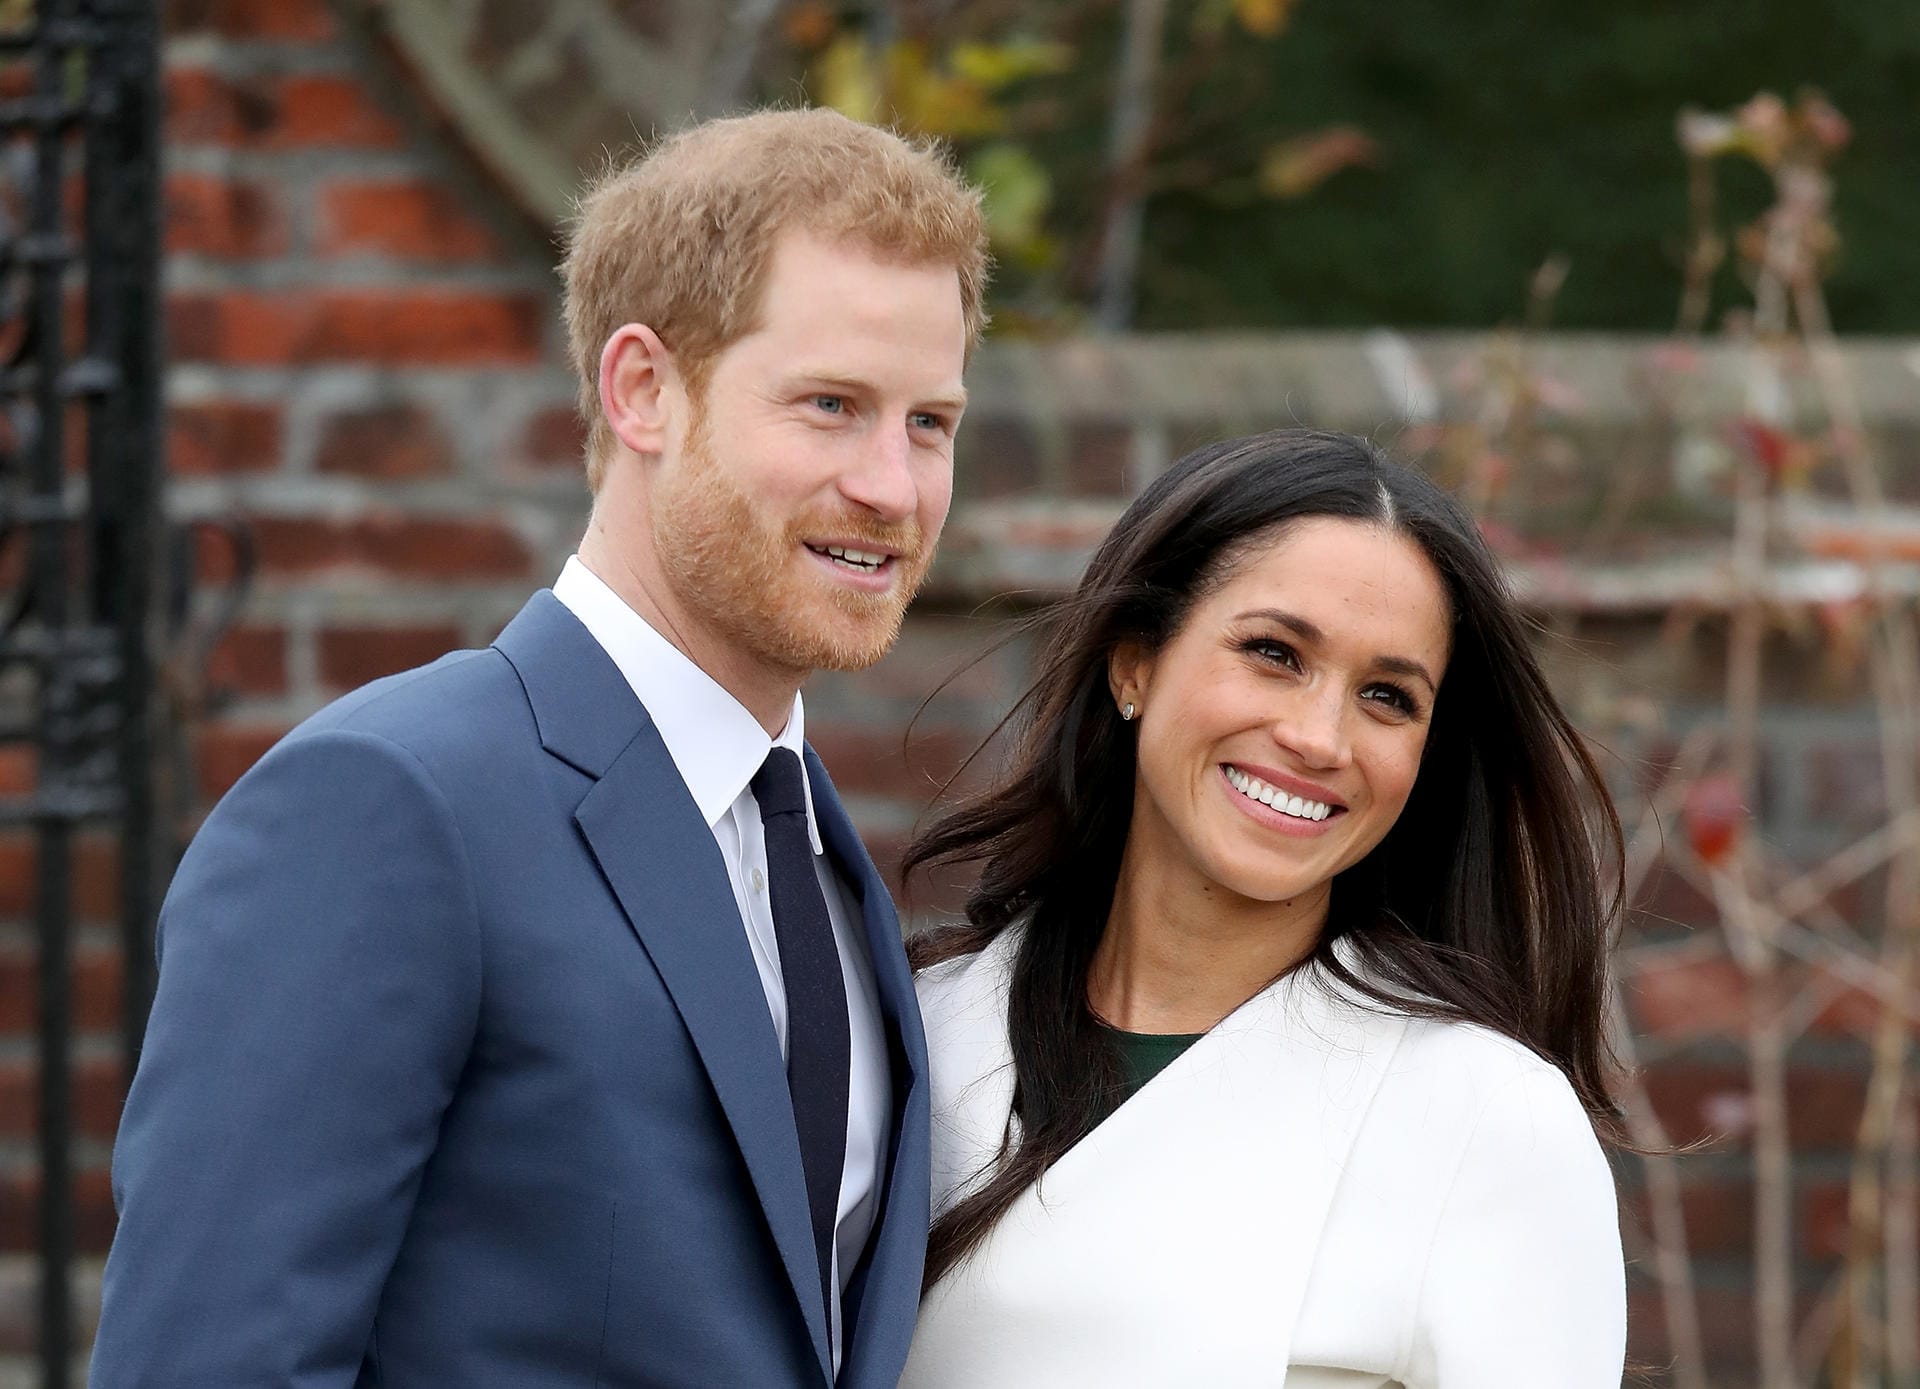 Am 27. November gab das britische Königshaus die Verlobung von Prinz Harry und Meghan Markle bekannt, wenige Stunden später posierte das Paar für die Fotografen. Am 19. Mai 2018 geben sich der Royal und die Schauspielerin auf Schloss Windsor das Jawort.